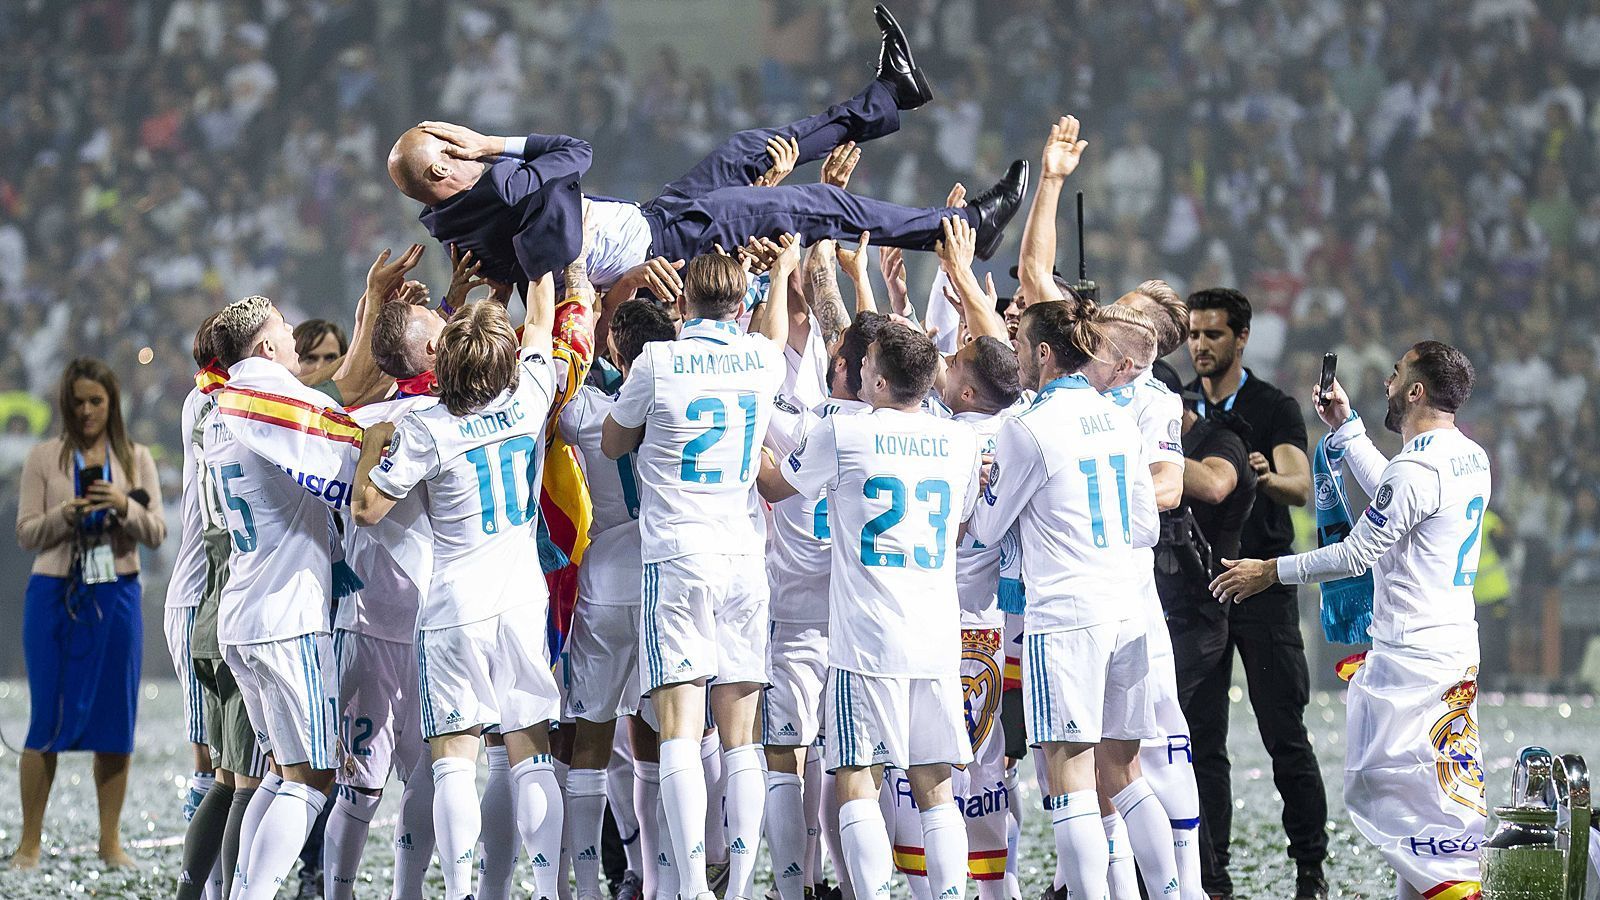 
                <strong>Alles auf Anfang!</strong><br>
                Zinedine Zidane hat sich mit dem dritten Champions-League-Titel in Folge ein Denkmal in der Geschichte von Real Madrid gesetzt. Doch mit dem Rücktritt des Erfolgstrainers ändert sich auch die Hierarchie innerhalb der Erfolgsmannschaft. ran.de zeigt, was Zizous Abschied für die Stars bedeuten könnte.
              